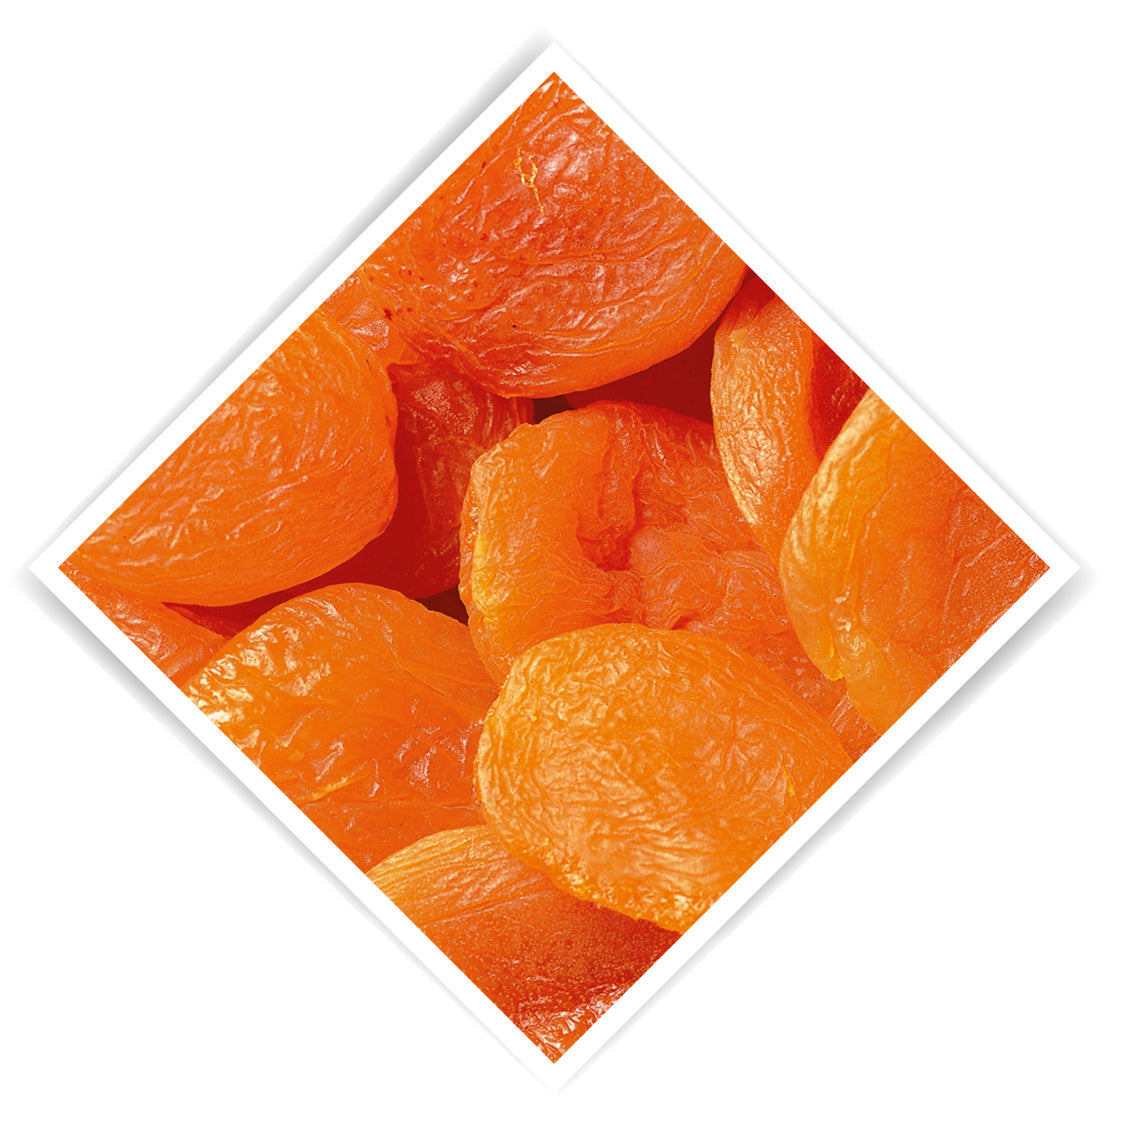 Apricots 